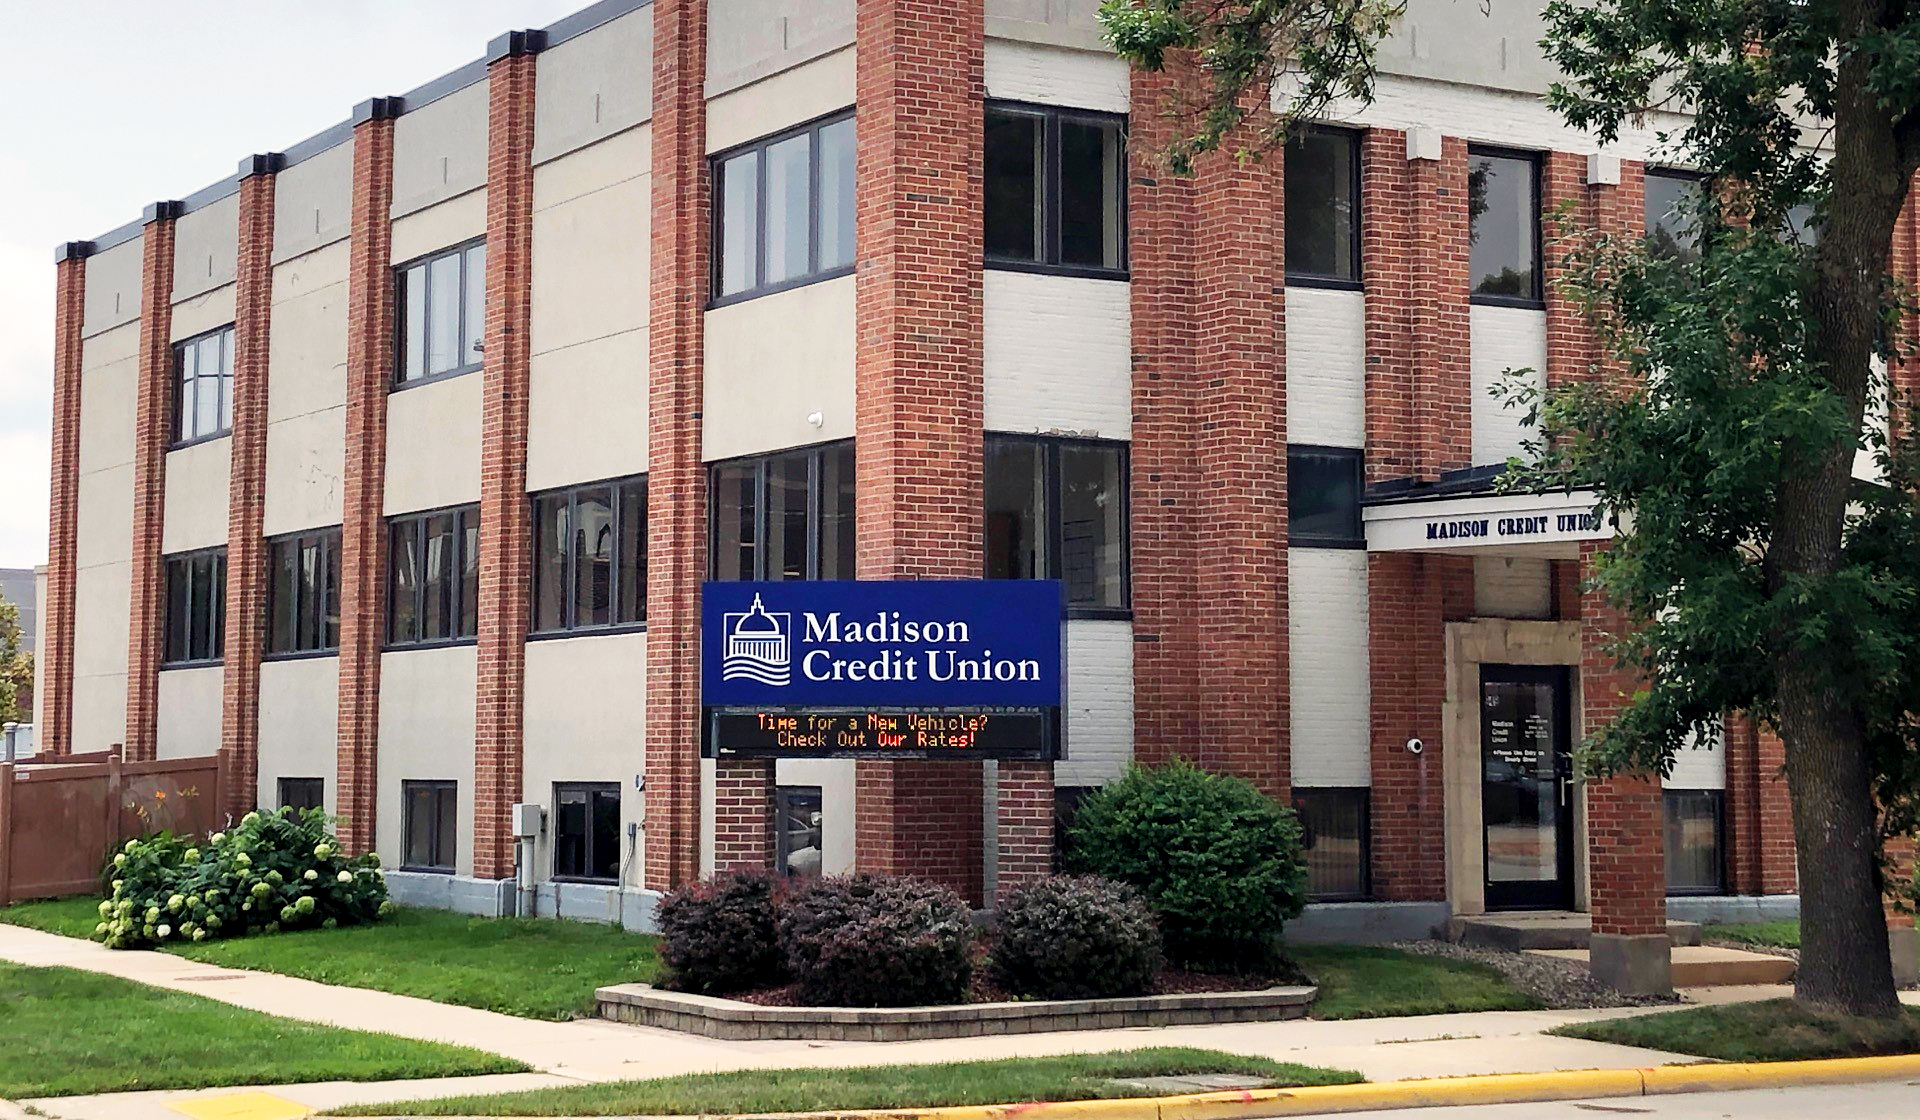 Madison credit union location